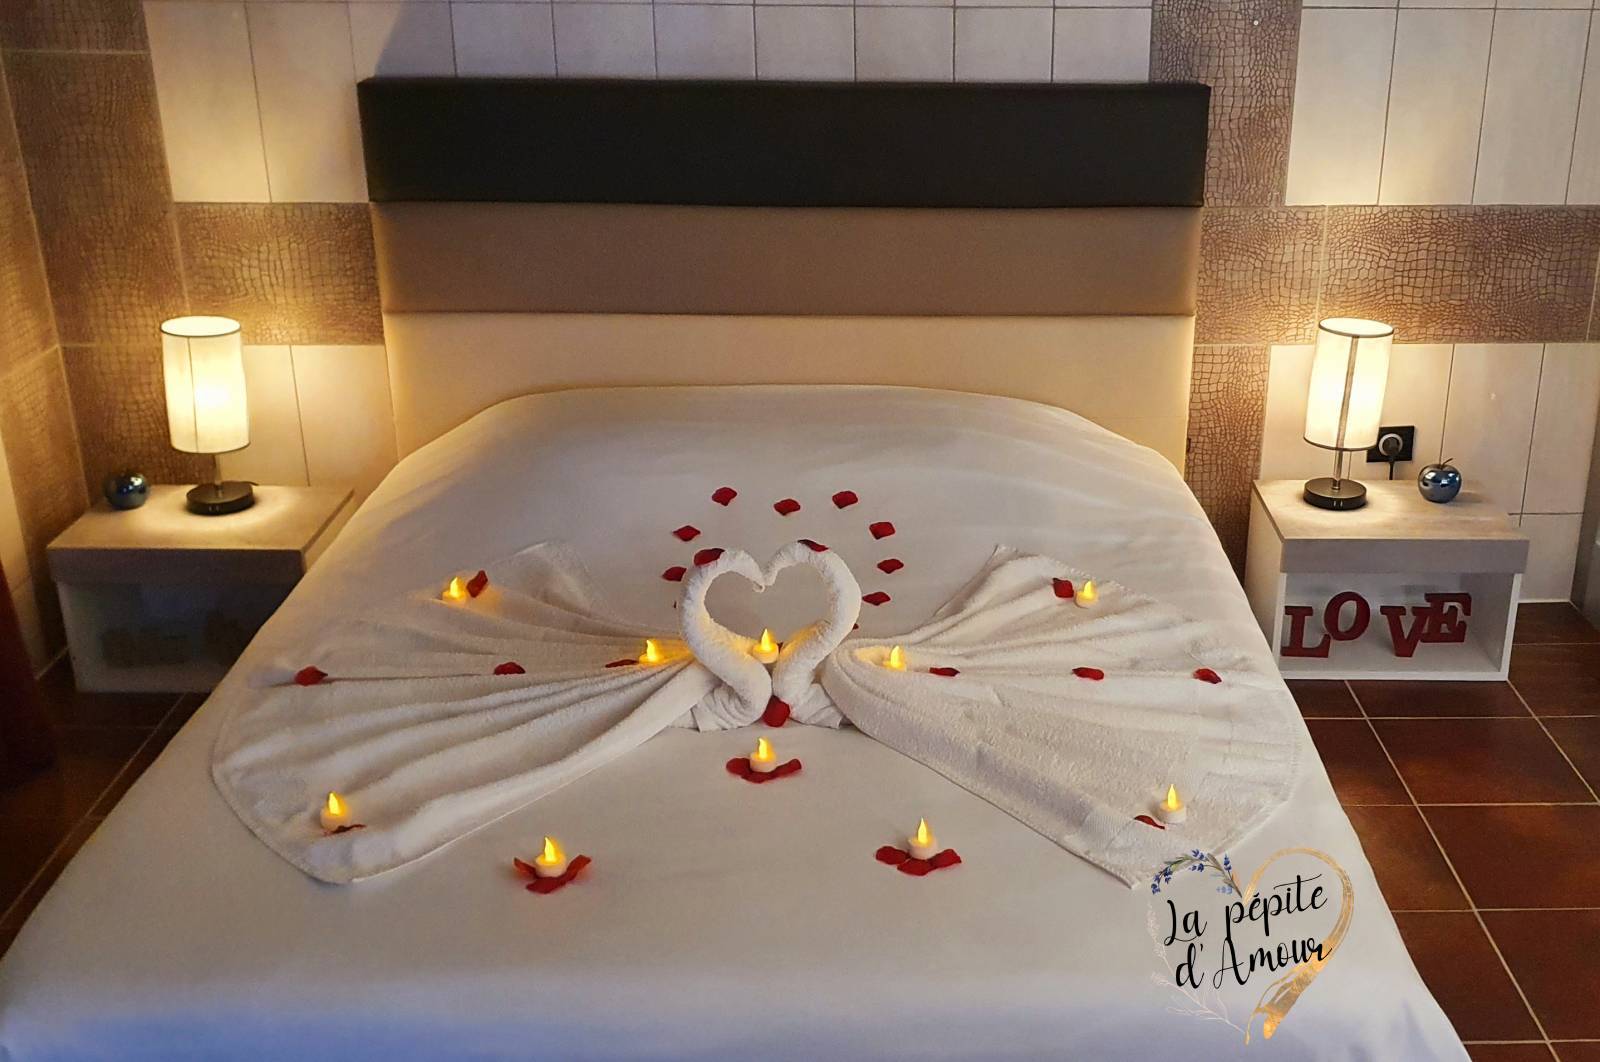 Soirée en amoureux en chambre romantique avec spa privatif, piscine privée, sauna, massages près de Toulon 83